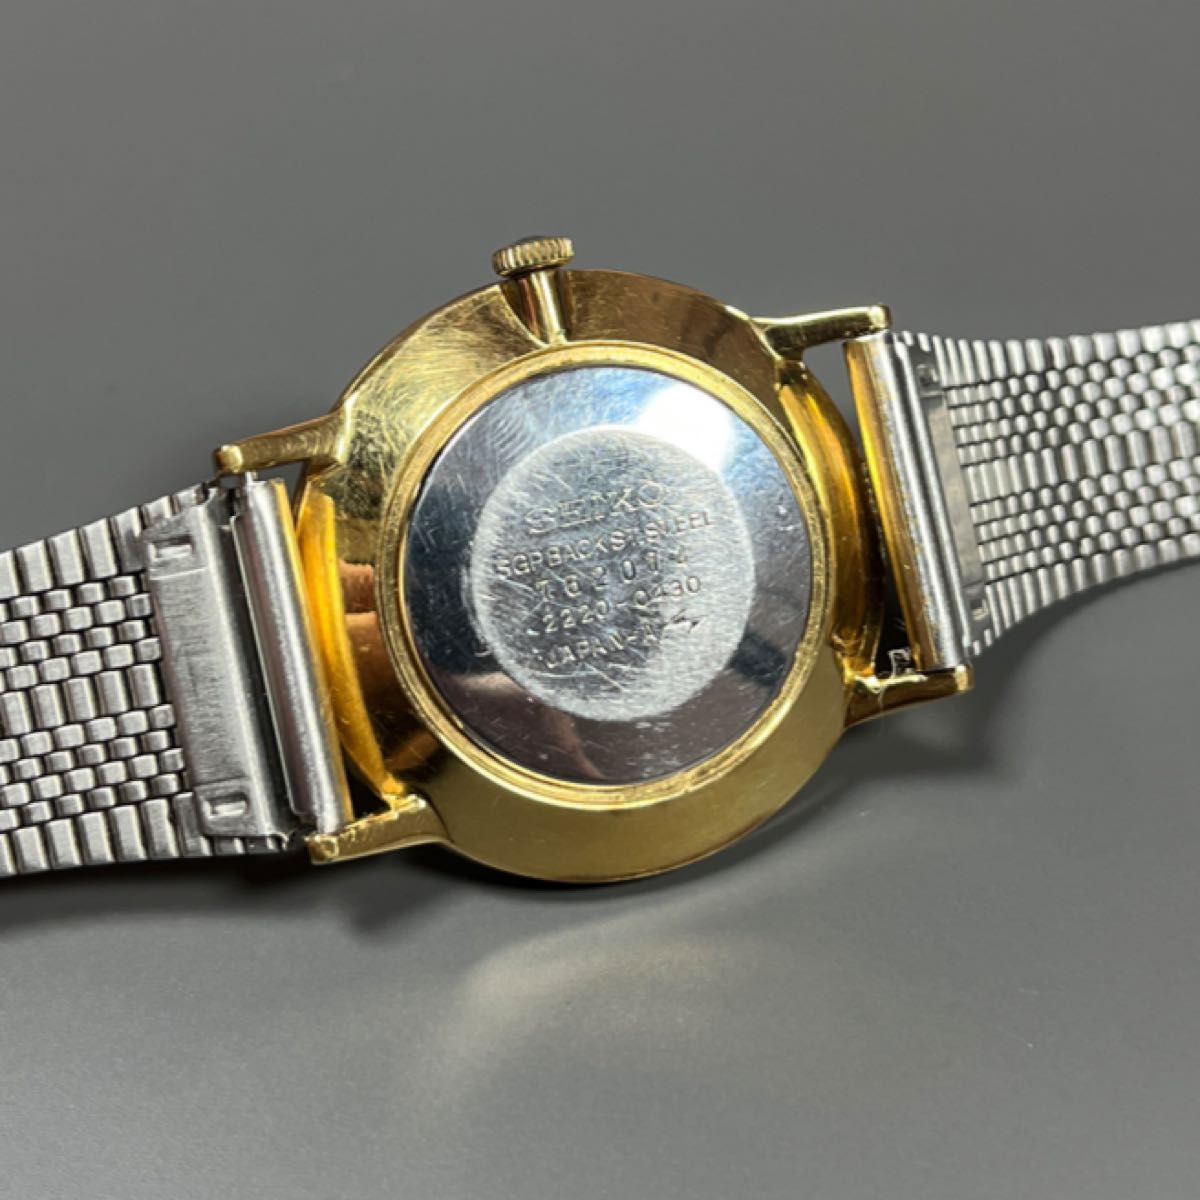 美品 SEIKO 腕時計 1975年製 2220-0430 シャリオ ローマン レア ヴィンテージ 薄型 手巻き 